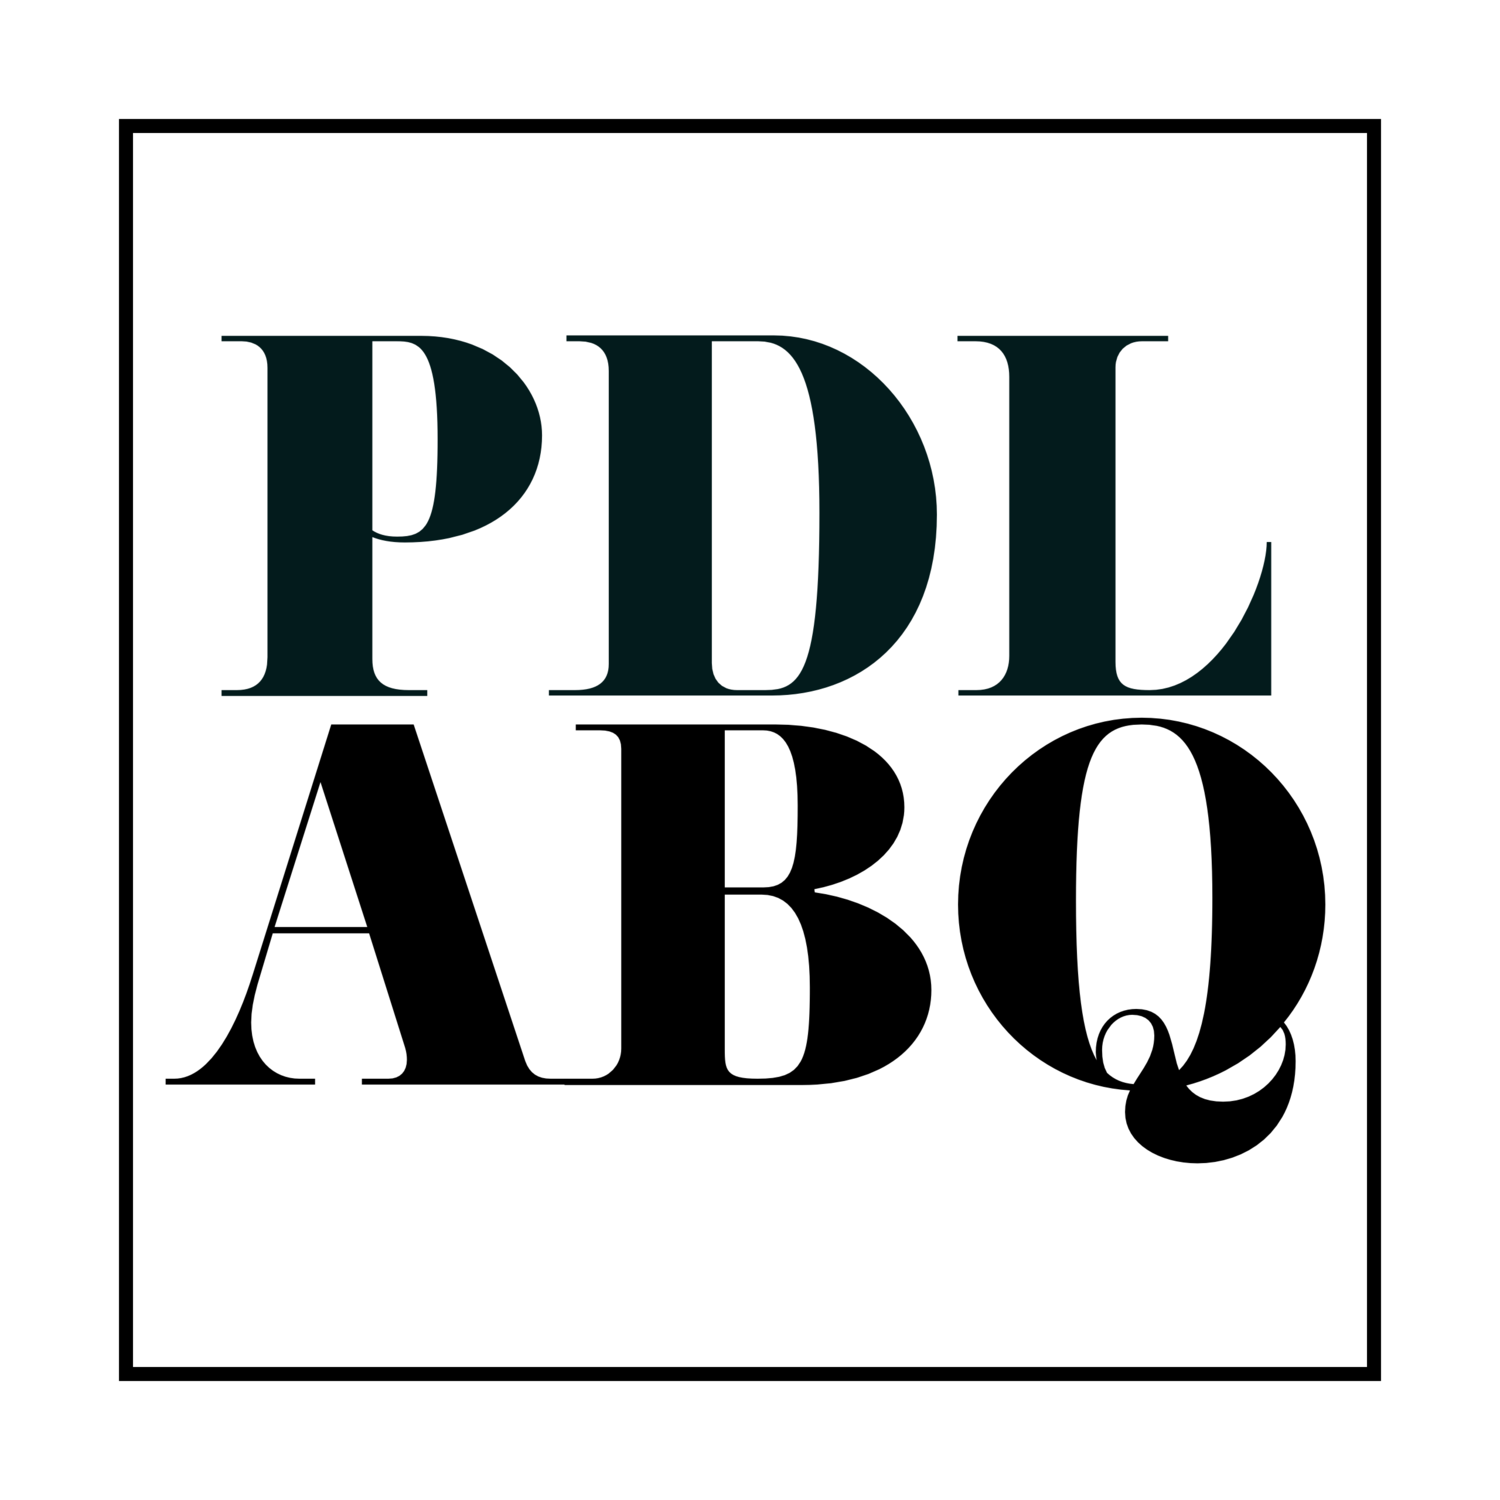 PDL-ABQ